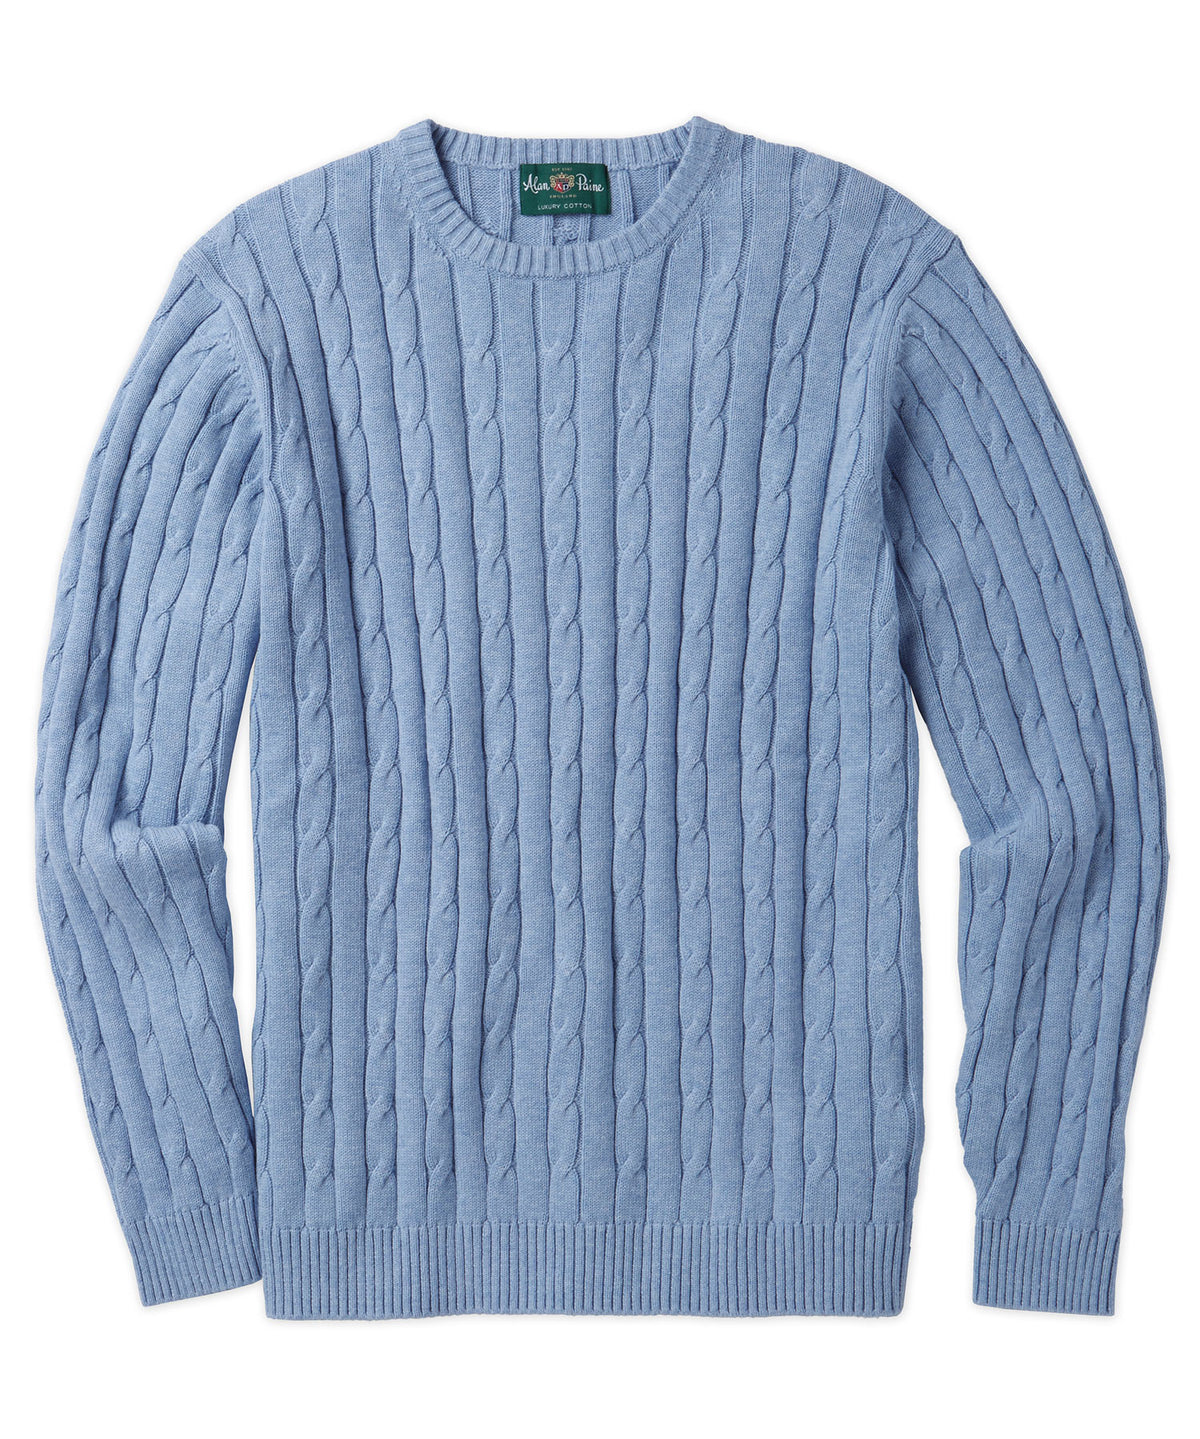 Alan Paine Cotton-Cashmere Cable Knit Crewneck Sweater